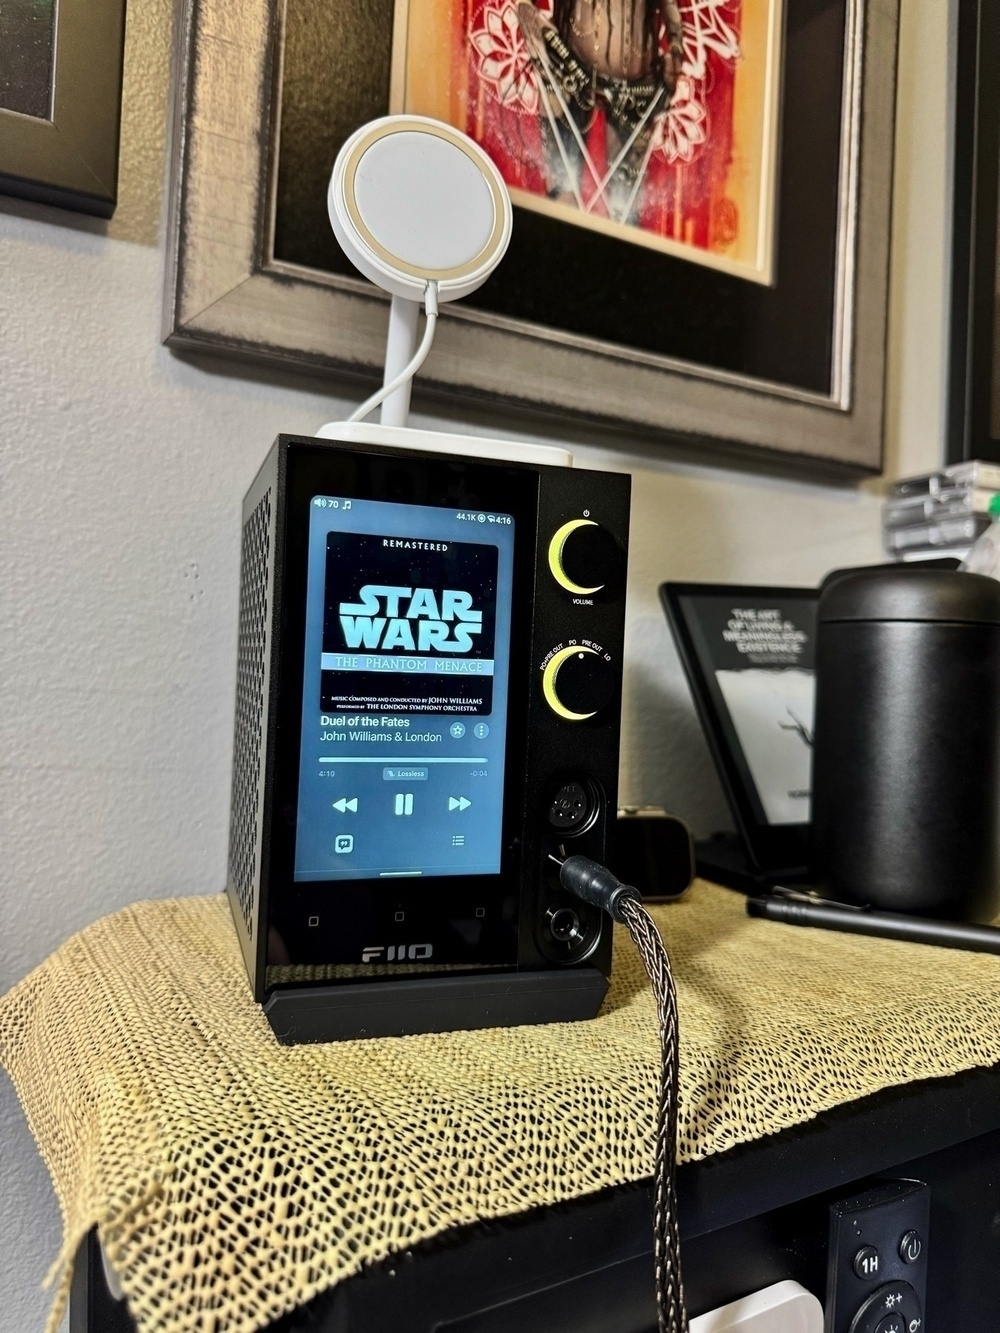 FIIO R7 desktop audio streamer sitting on a headboard, display a Star Wars album currently playing.